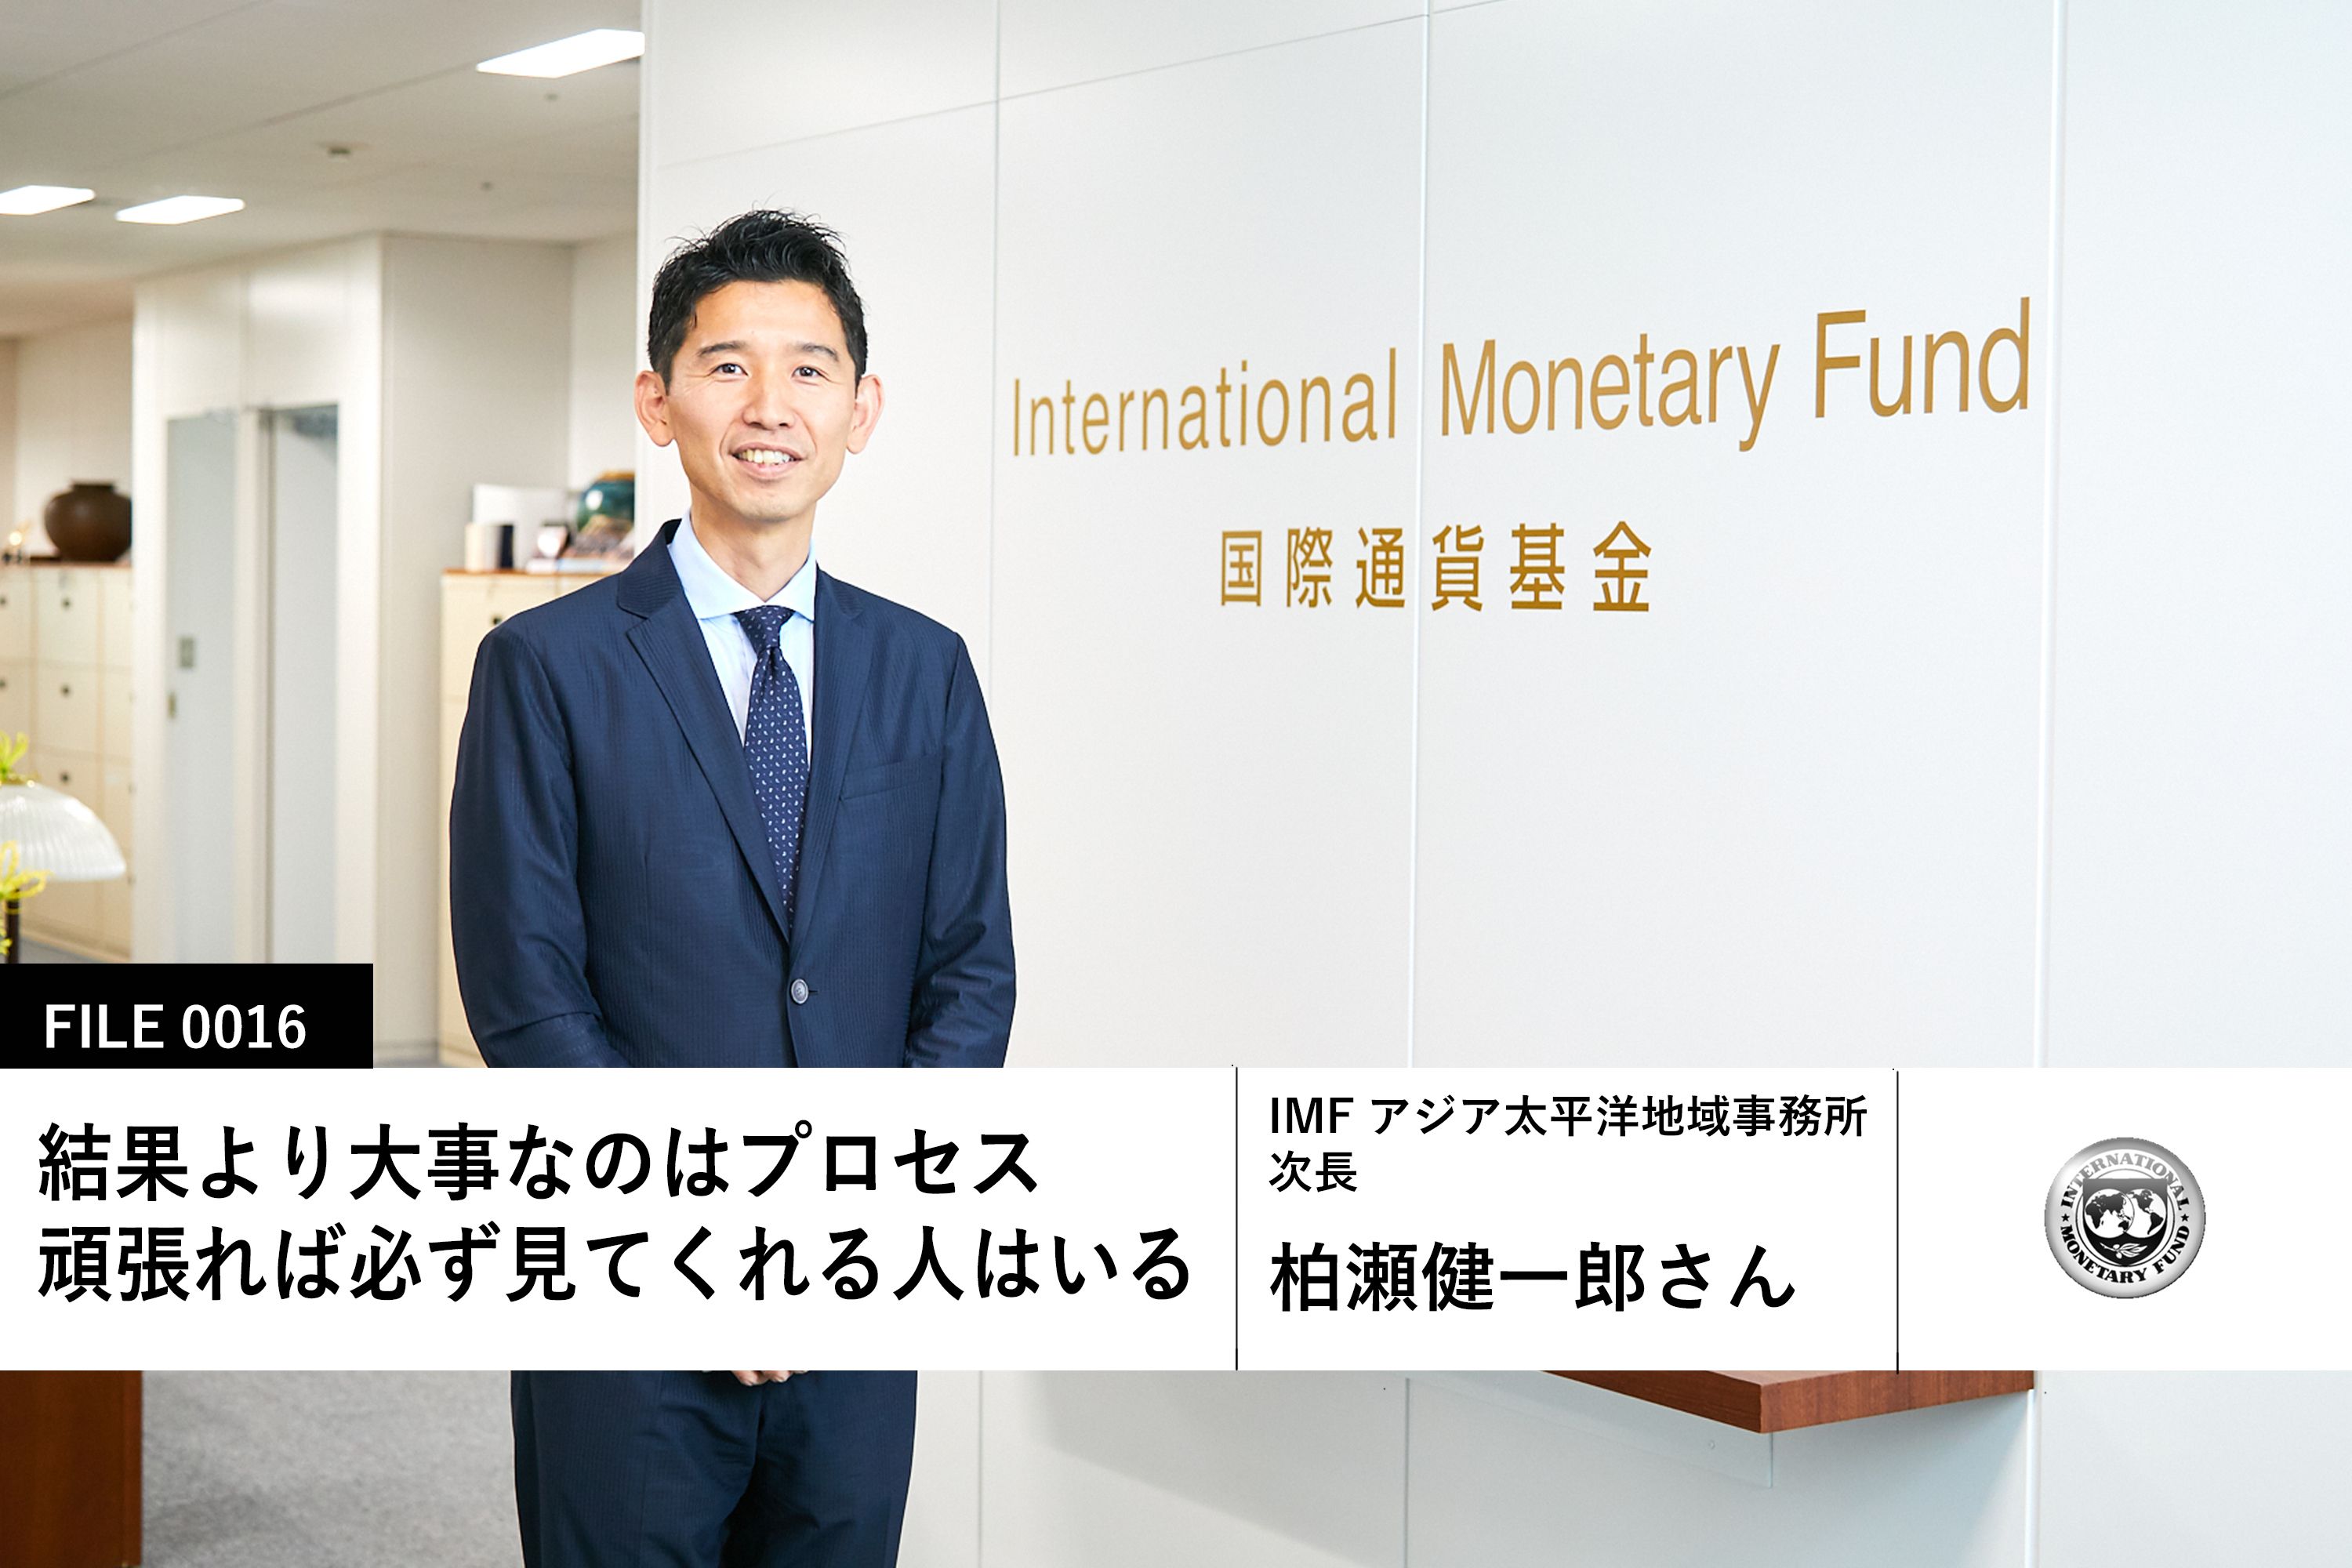 国際通貨基金の柏瀬健一郎さん